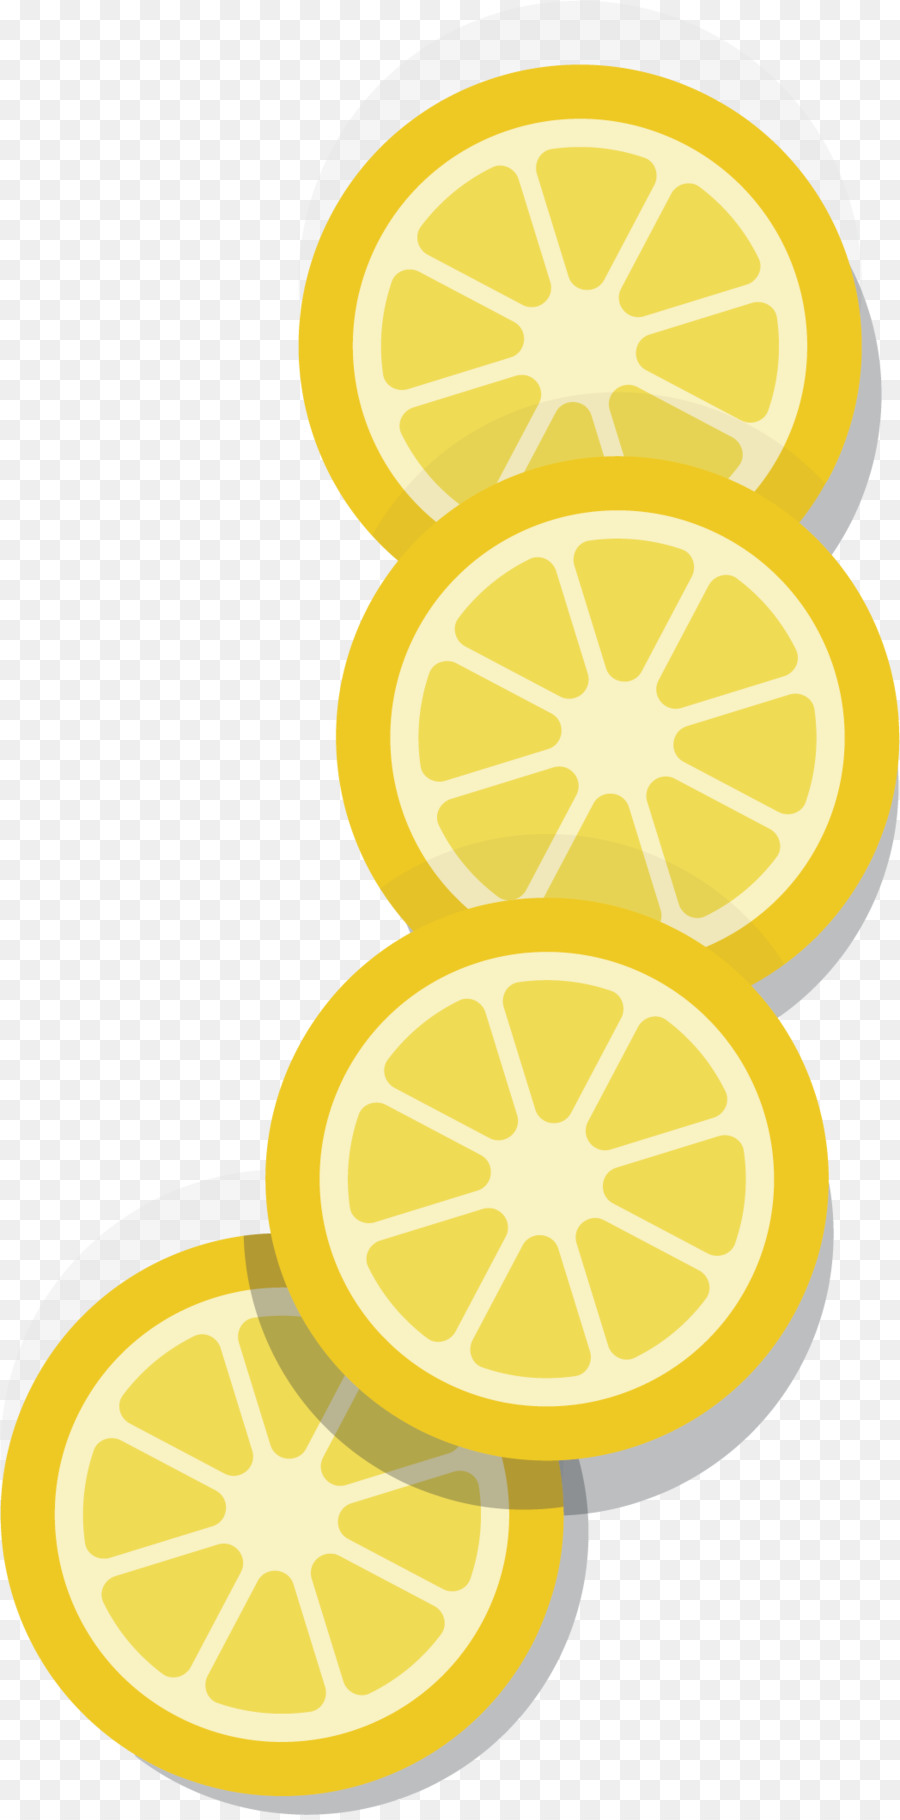 Zitrone Auglis - Frische zitronenscheibe